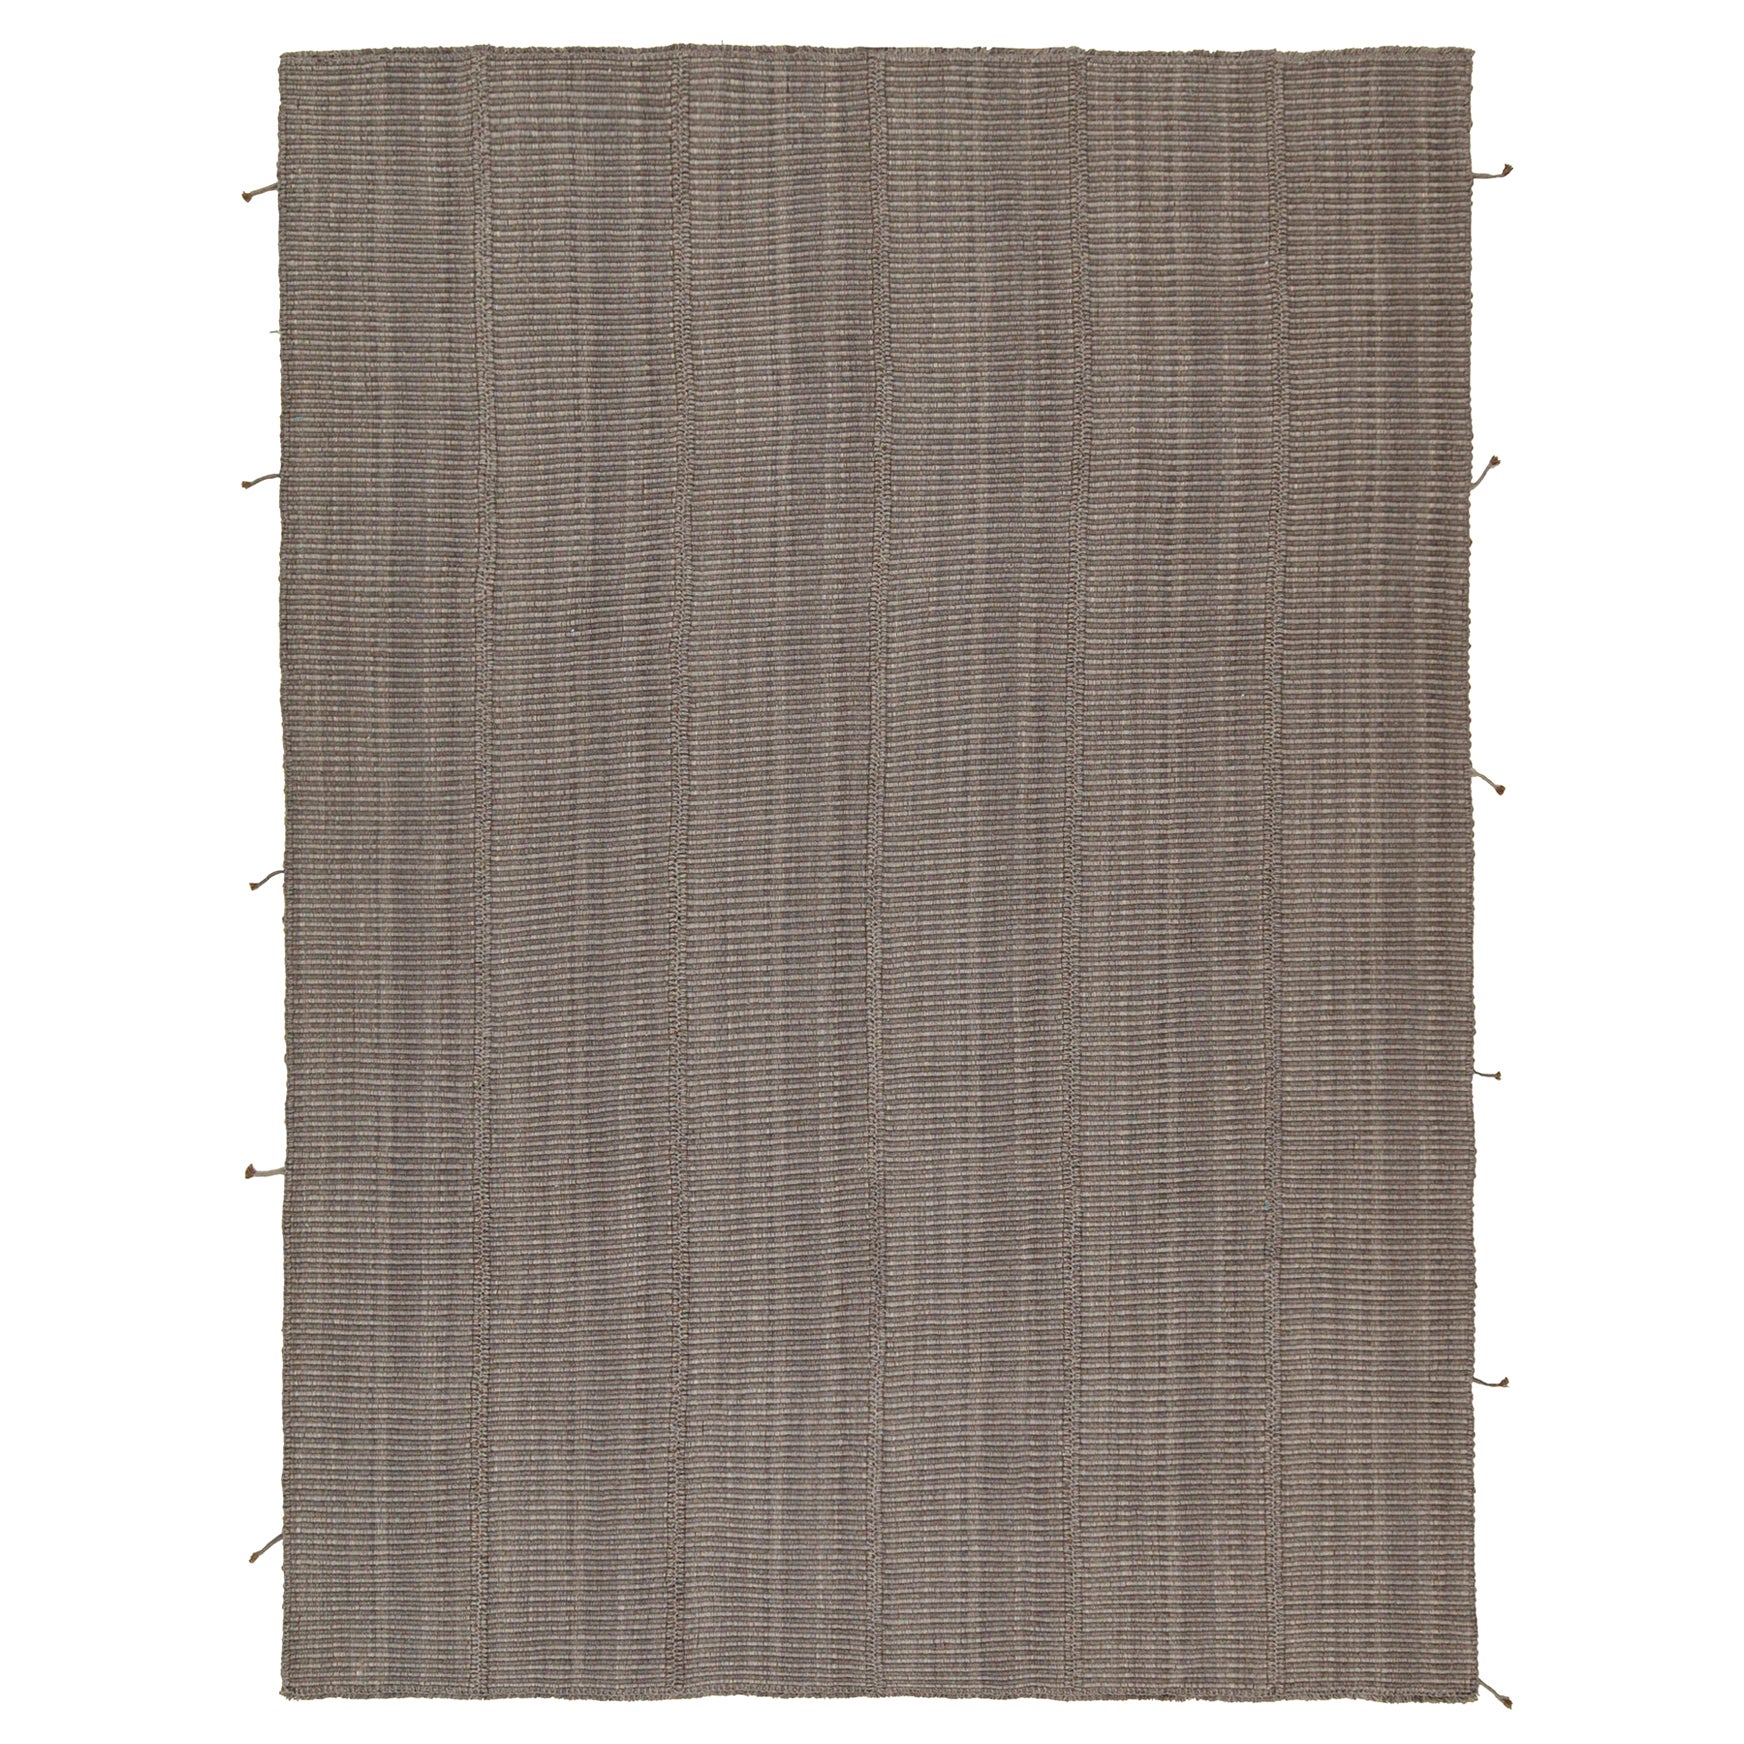 Zeitgenössischer Kilim-Teppich von Rug & Kilim in Grau mit braunen Akzenten